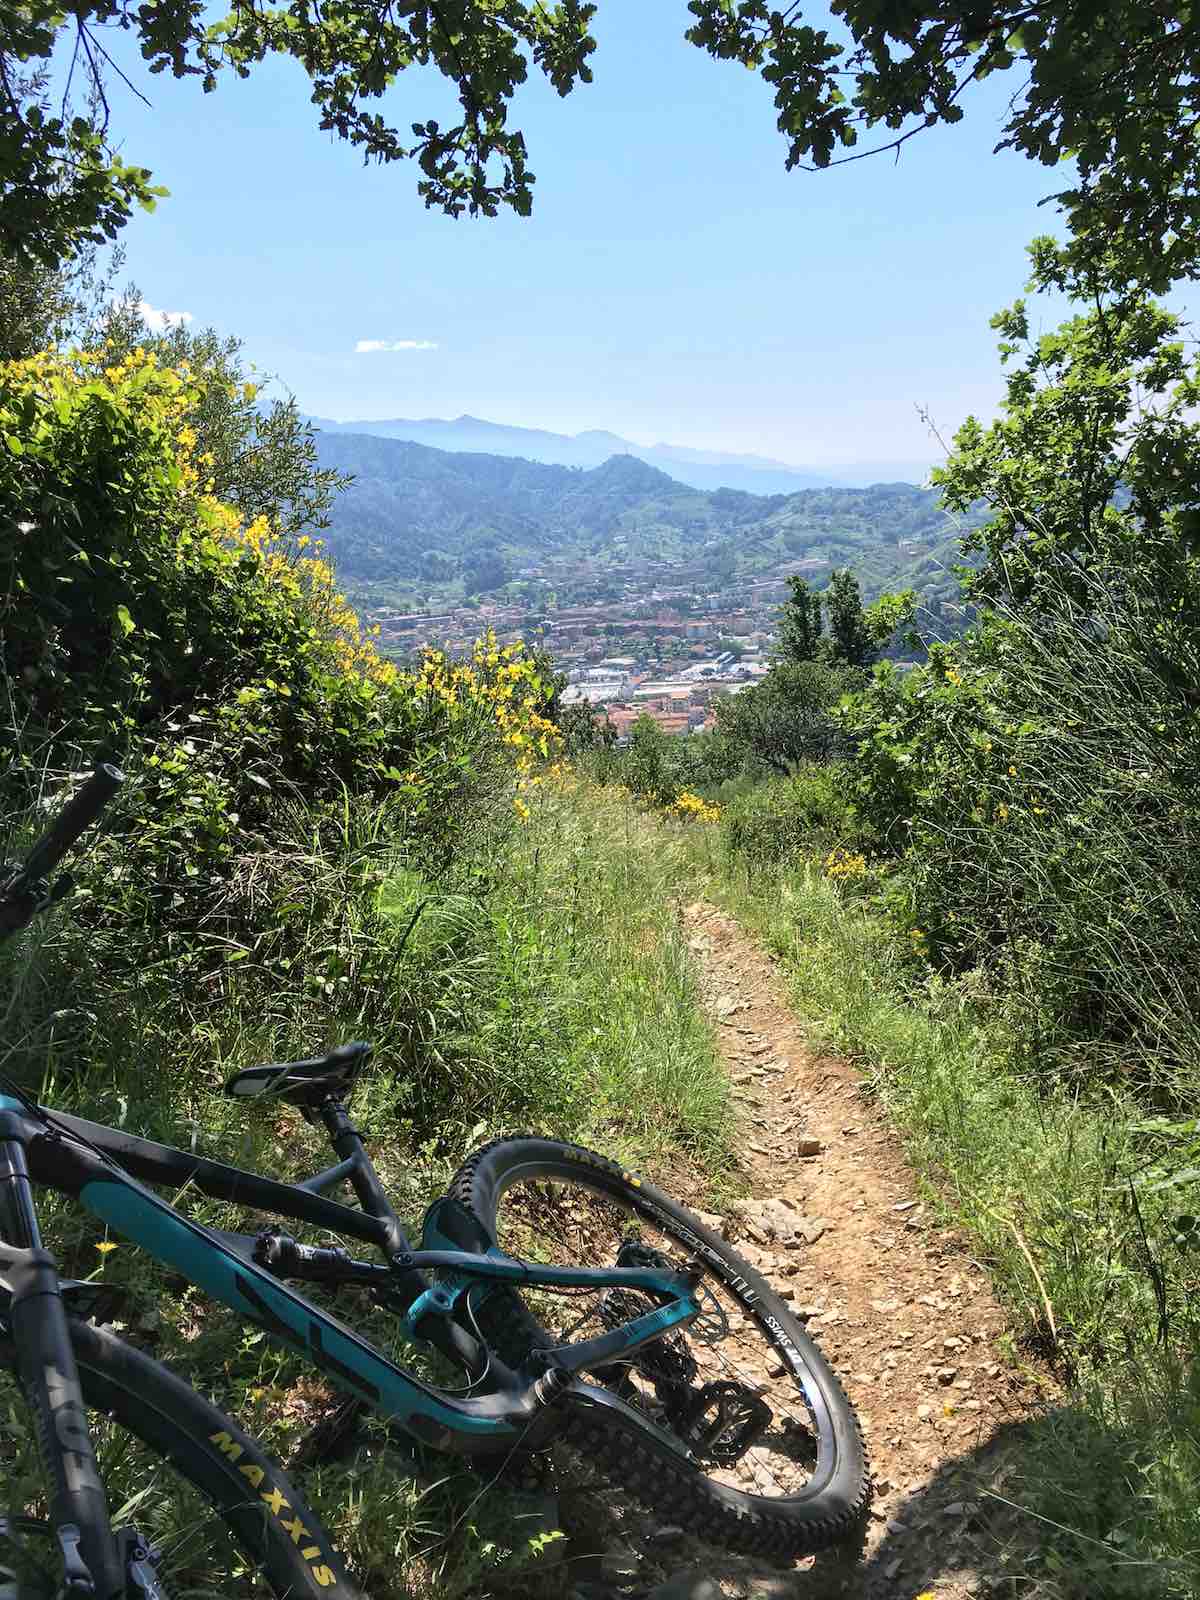 bikerumor pic of the day mountain biking in Marina di Carrara, Italy